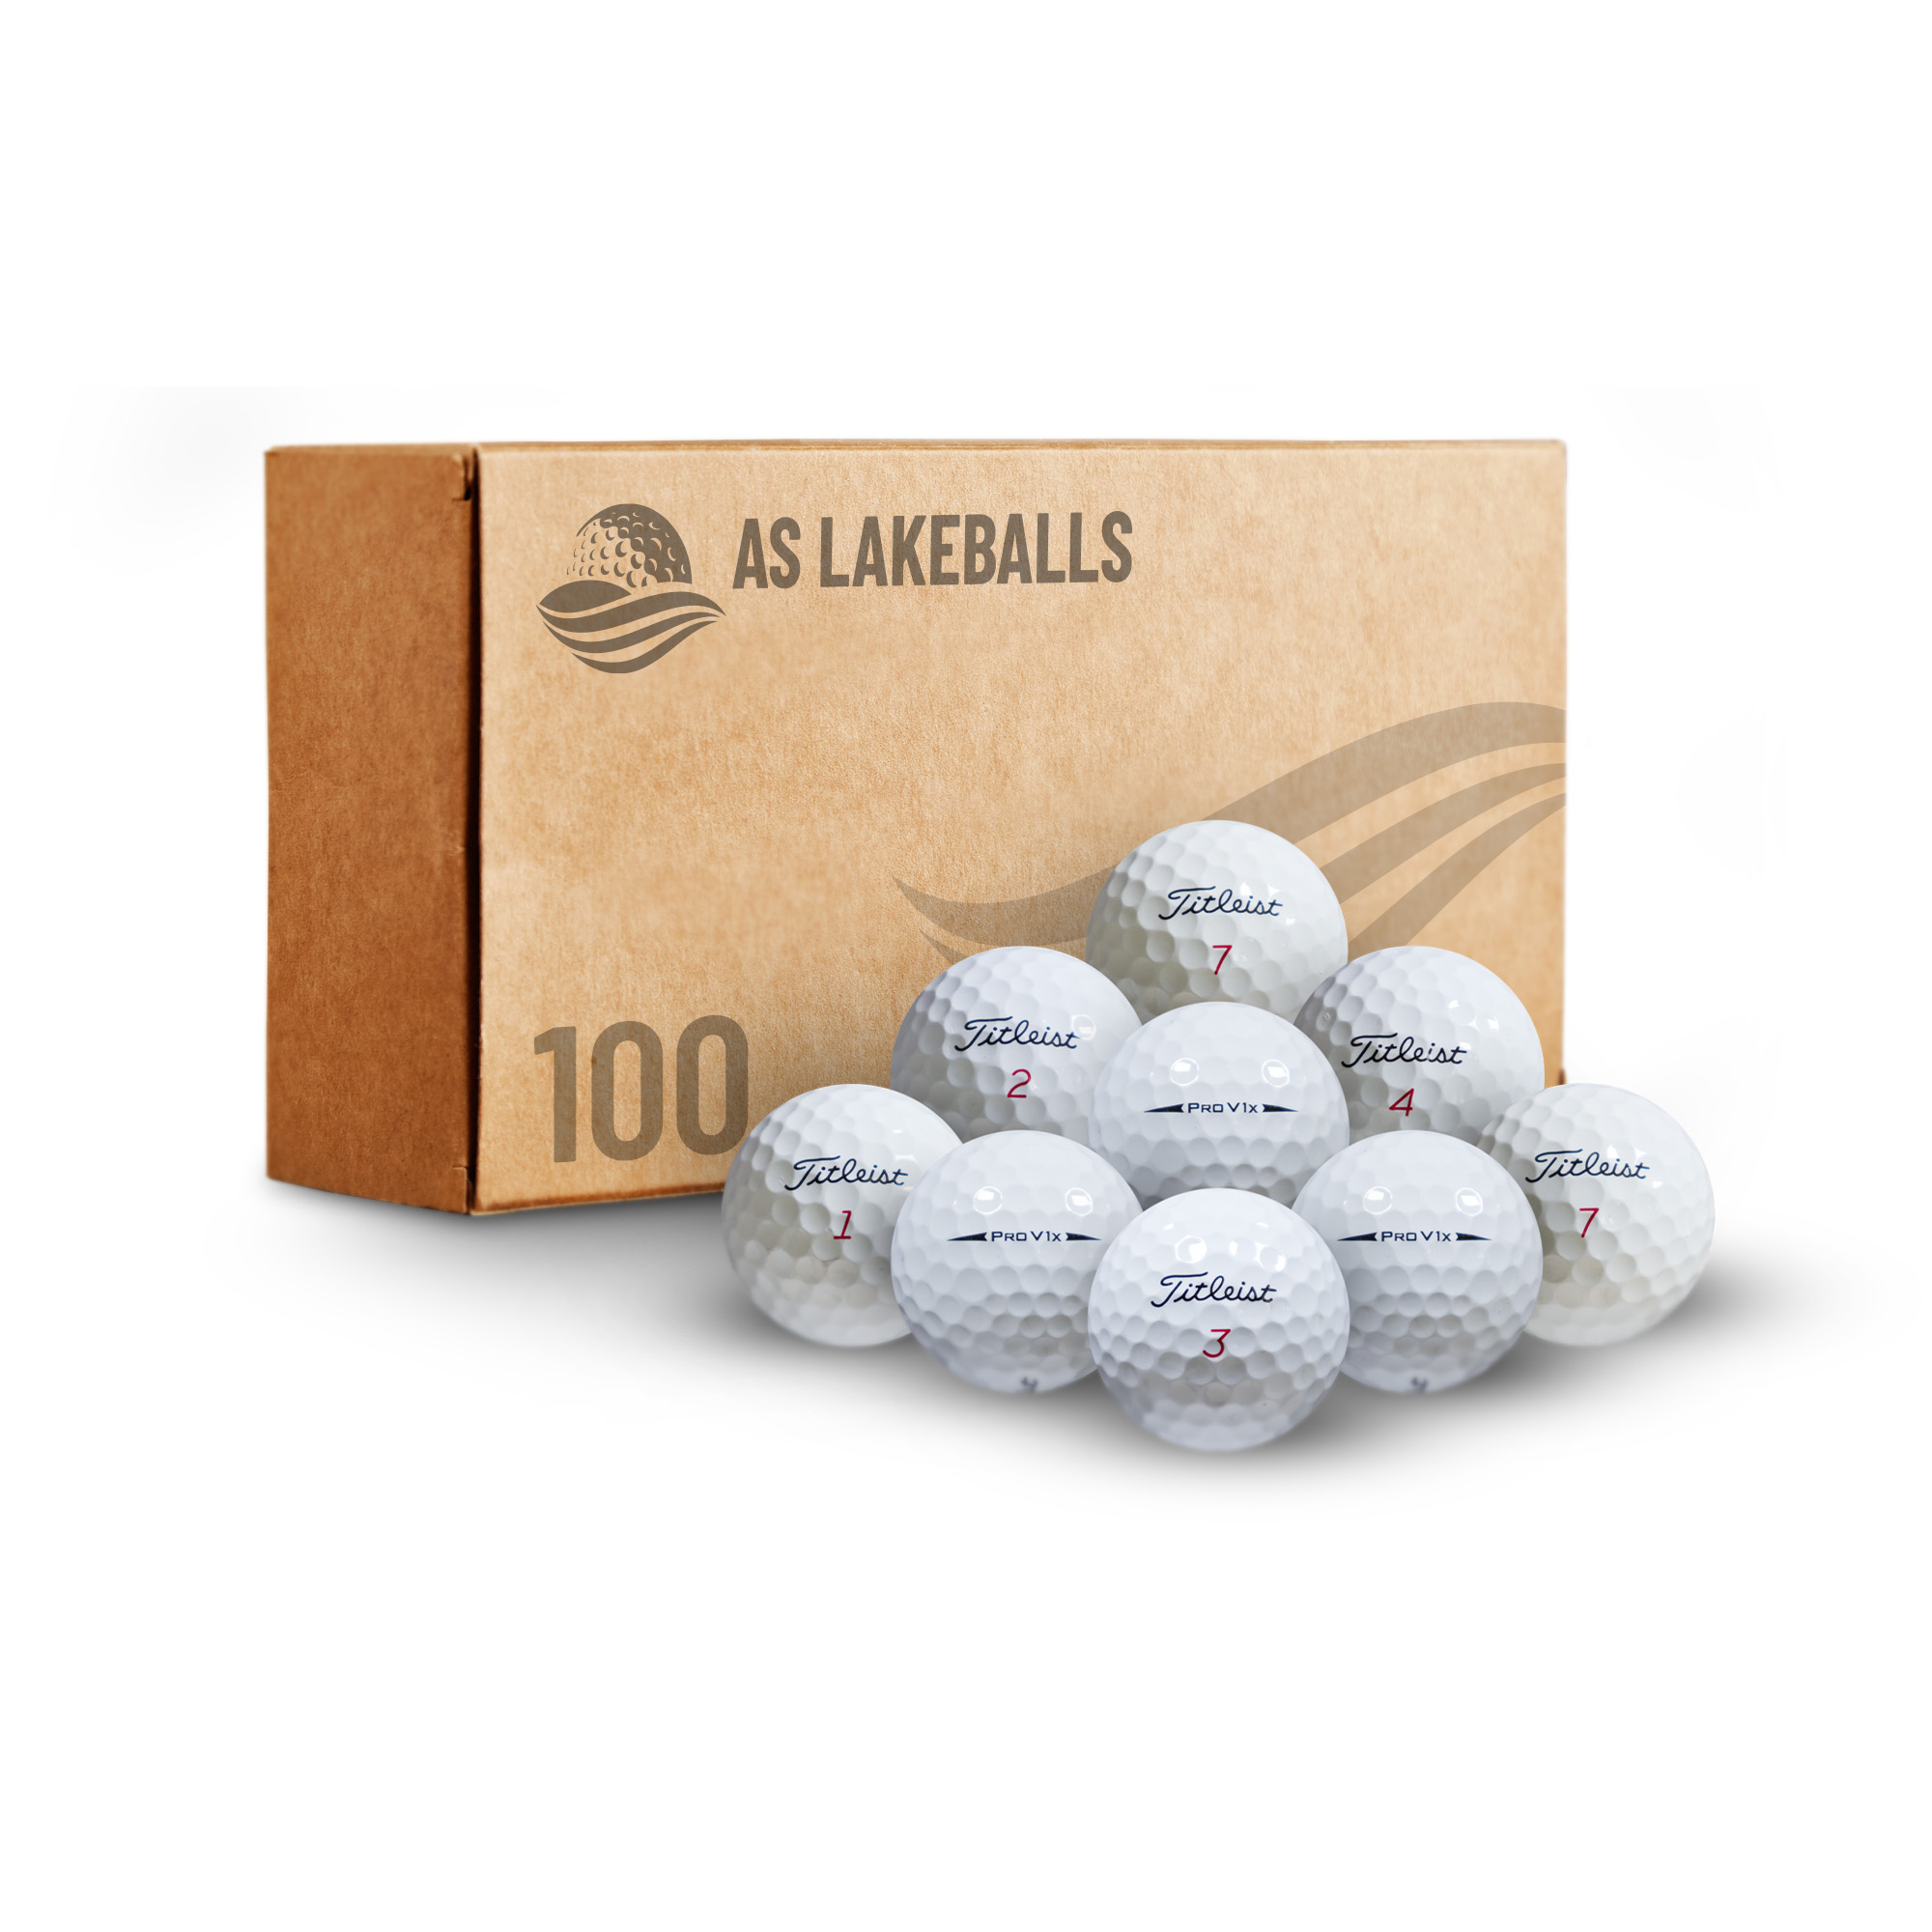 100 Titleist Pro V1X AAA-AA bei AS Lakeballs günstig kaufen